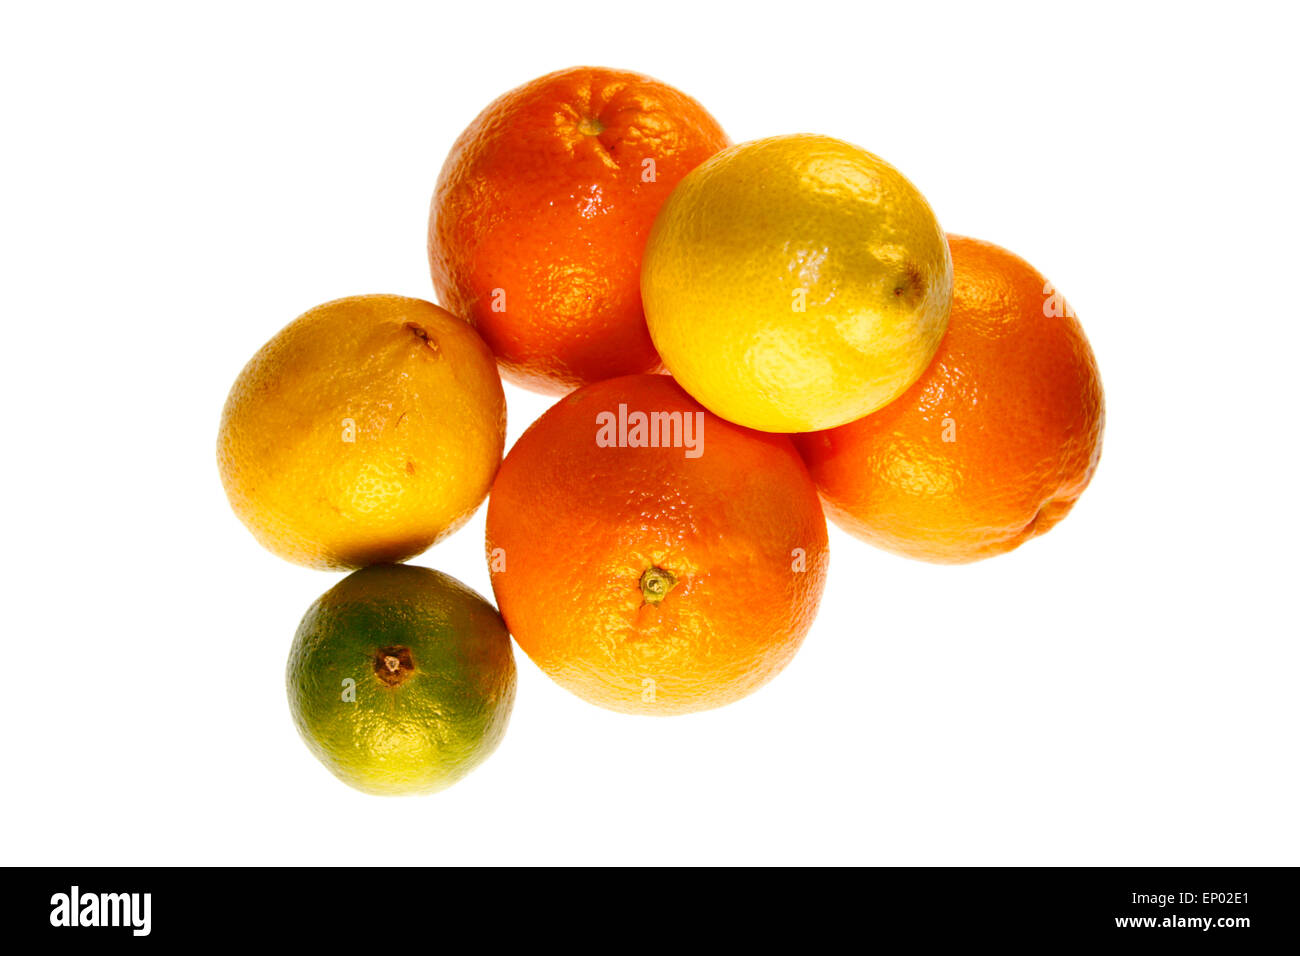 Suedfruechte : Zitrone, mandarine, clémentine, Orange, Limone - Symbolbild Nahrungsmittel. Banque D'Images